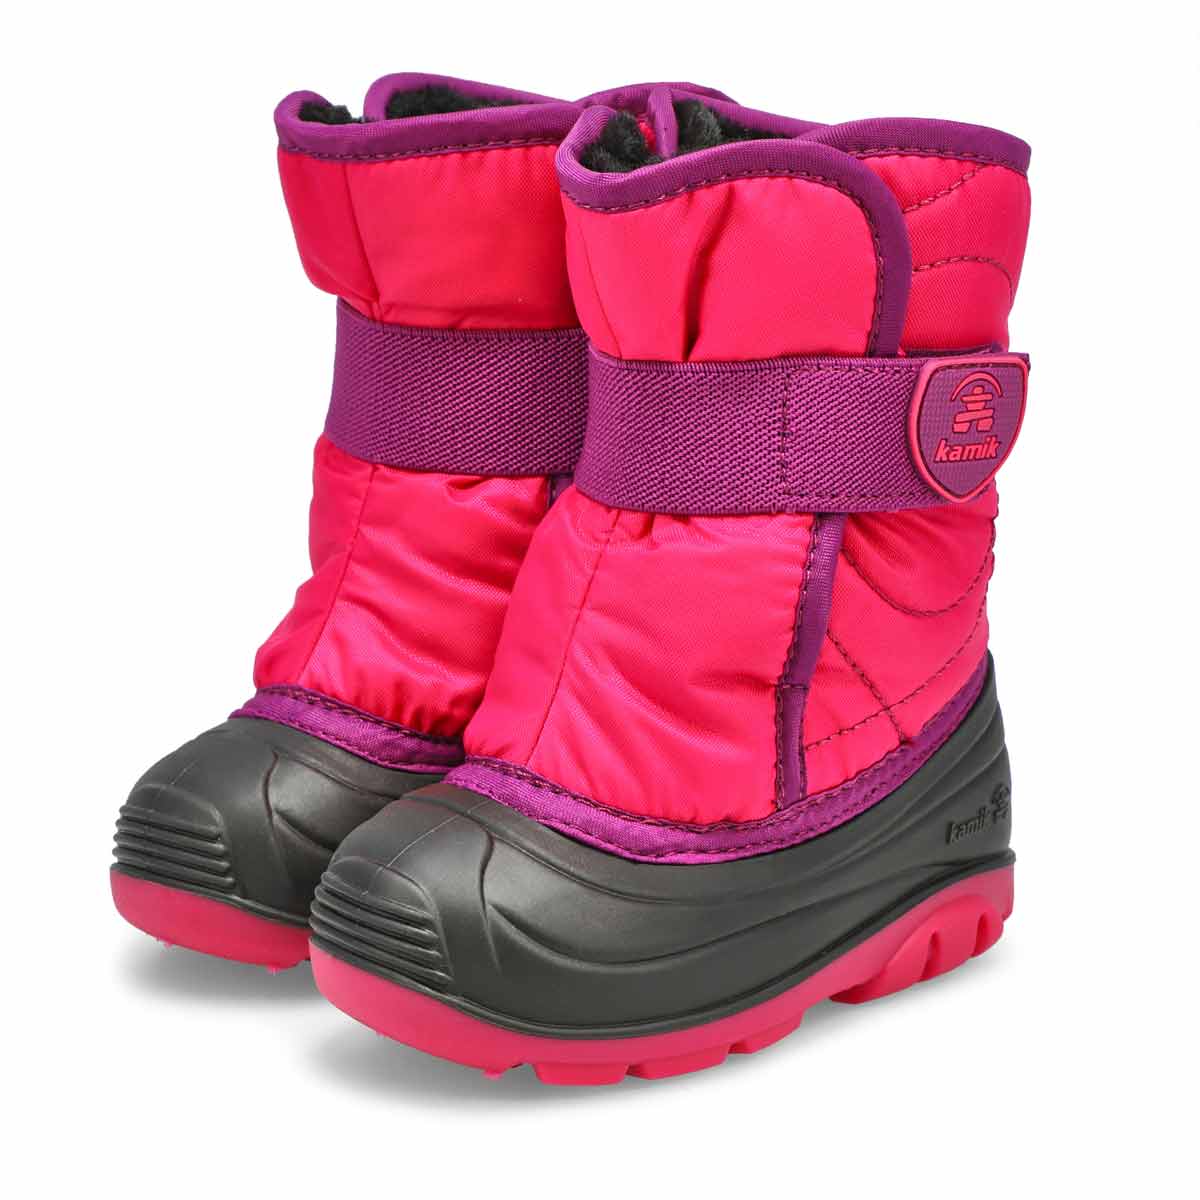 Infants' Snowbug 3 Waterproof Winter Boot - Rose